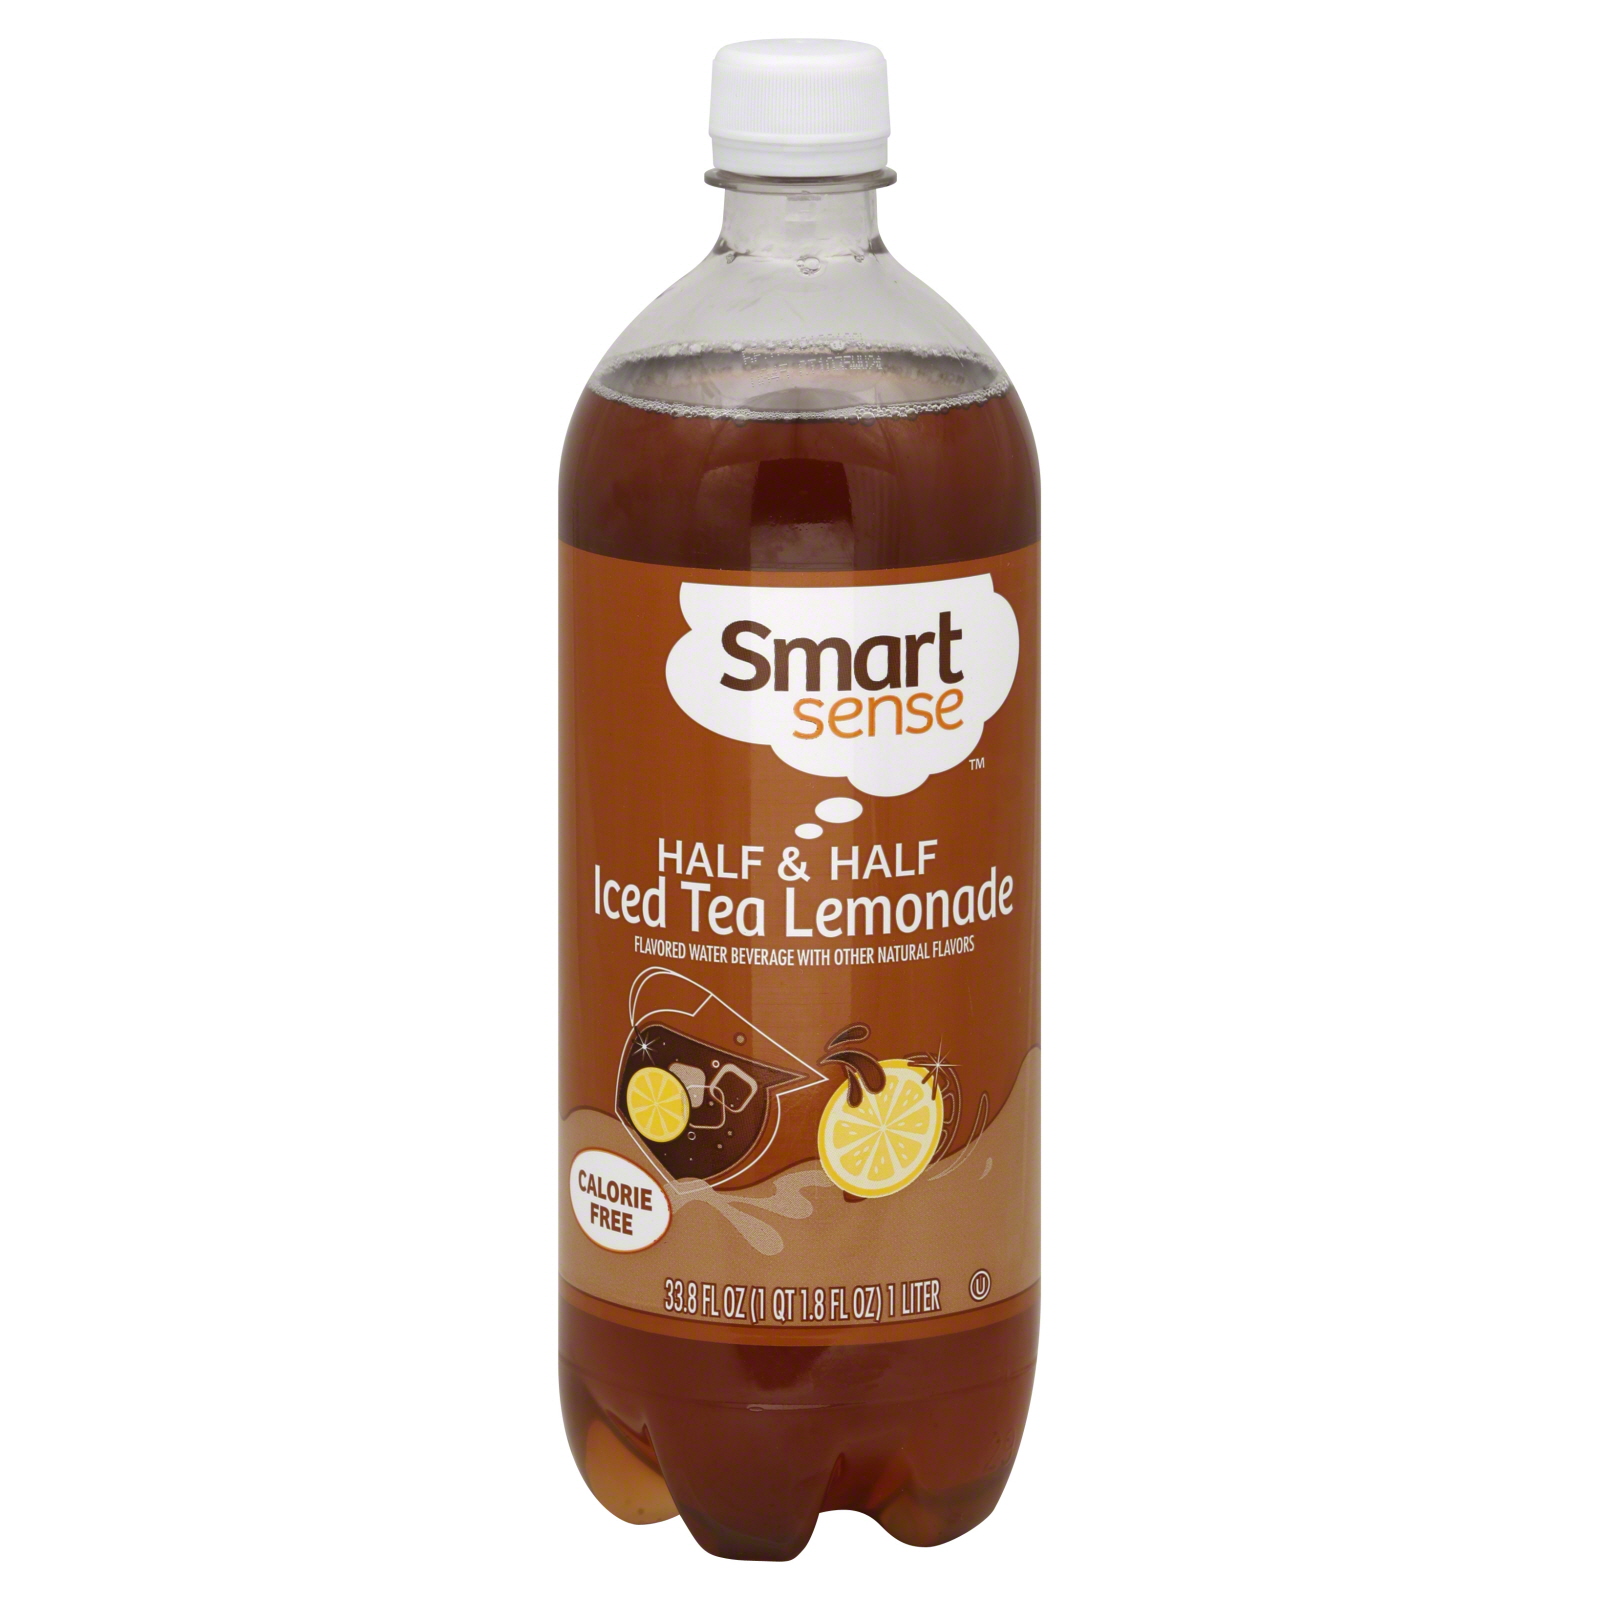 Smart Sense Ice Tea Lemonade, Half & Half 33.8 fl oz (1 qt 1.8 fl oz) 1 lt